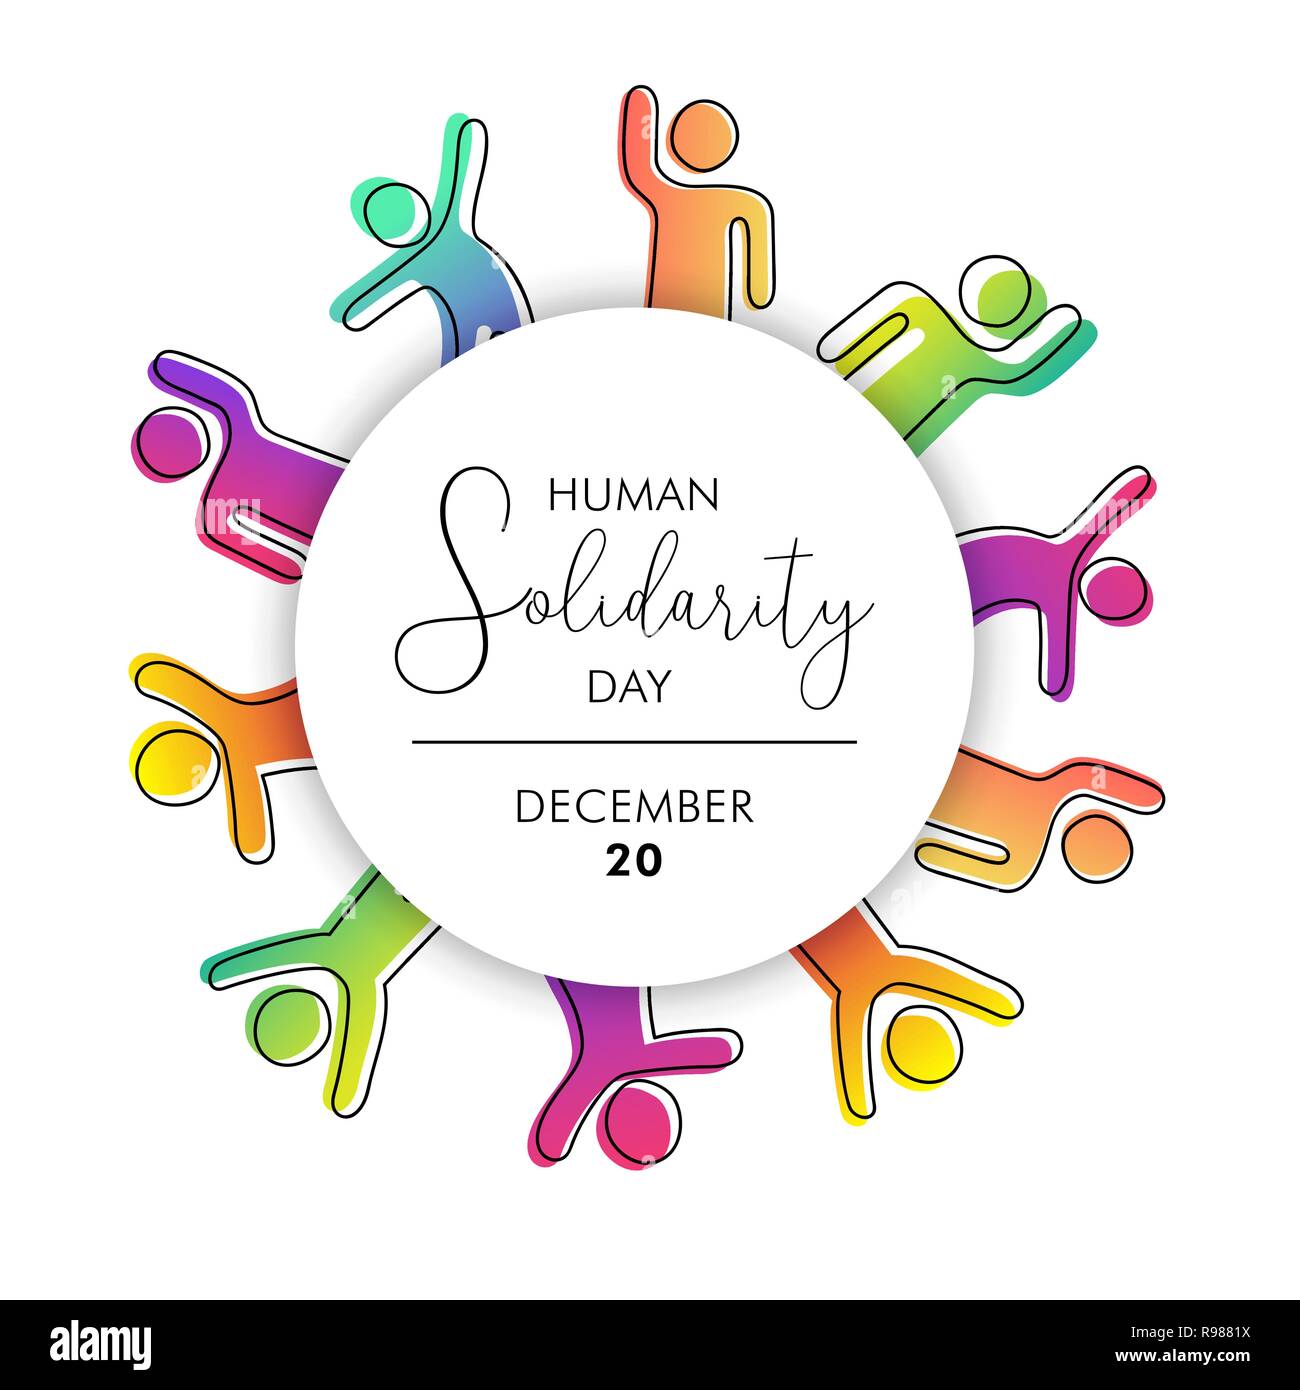 Journée internationale de la solidarité humaine l'illustration de la diversité des peuples colorés d'aider les uns les autres pour aider la communauté, concept de soutien social. Illustration de Vecteur